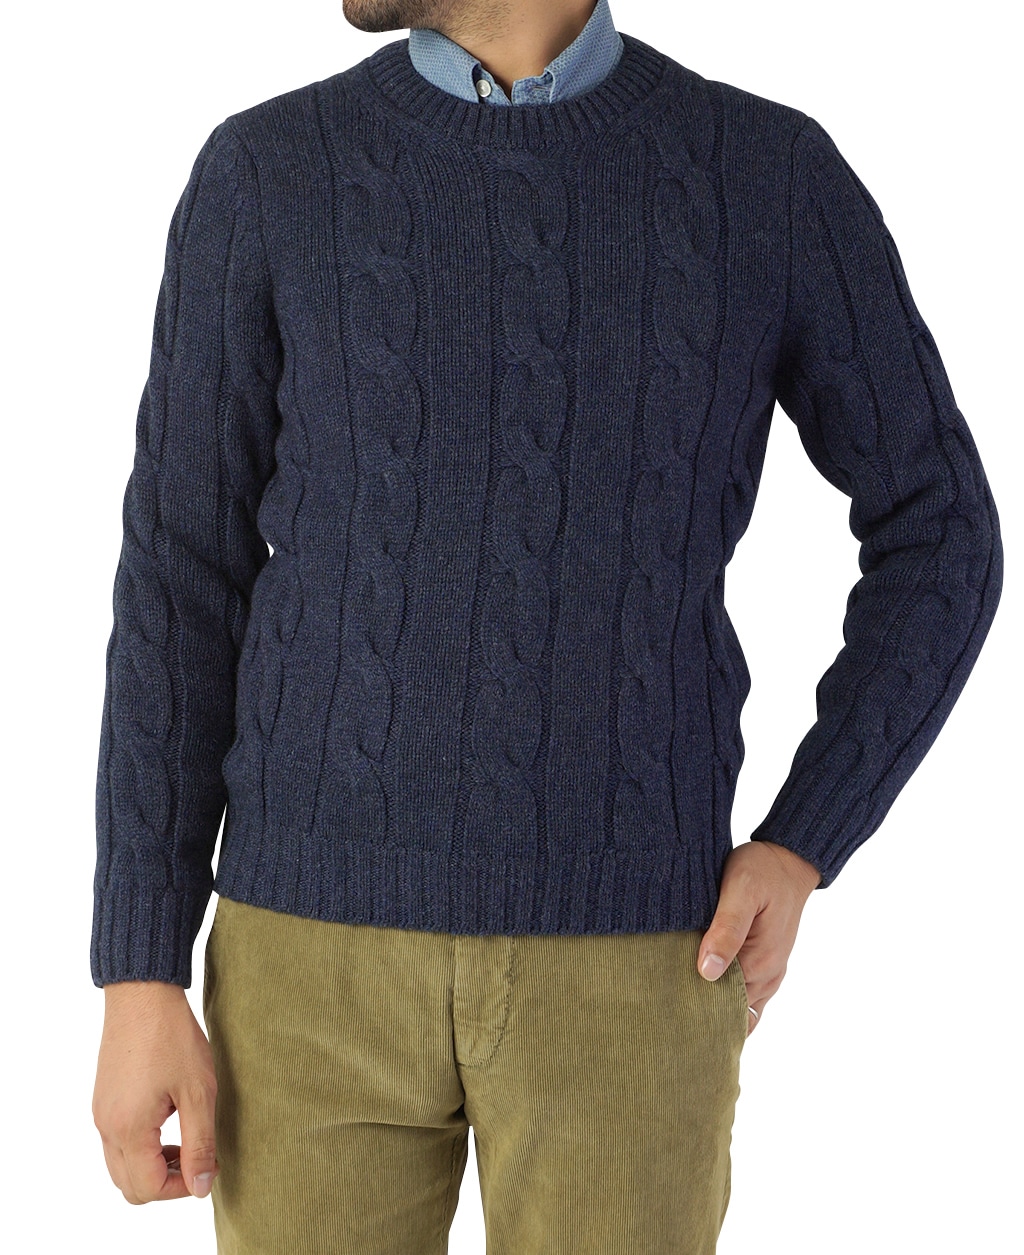 ケーブルクルーネックセーター(M ブルー系): メンズ | メーカーズシャツ鎌倉 公式通販 | 日本製ワイシャツ ネクタイ ブラウス